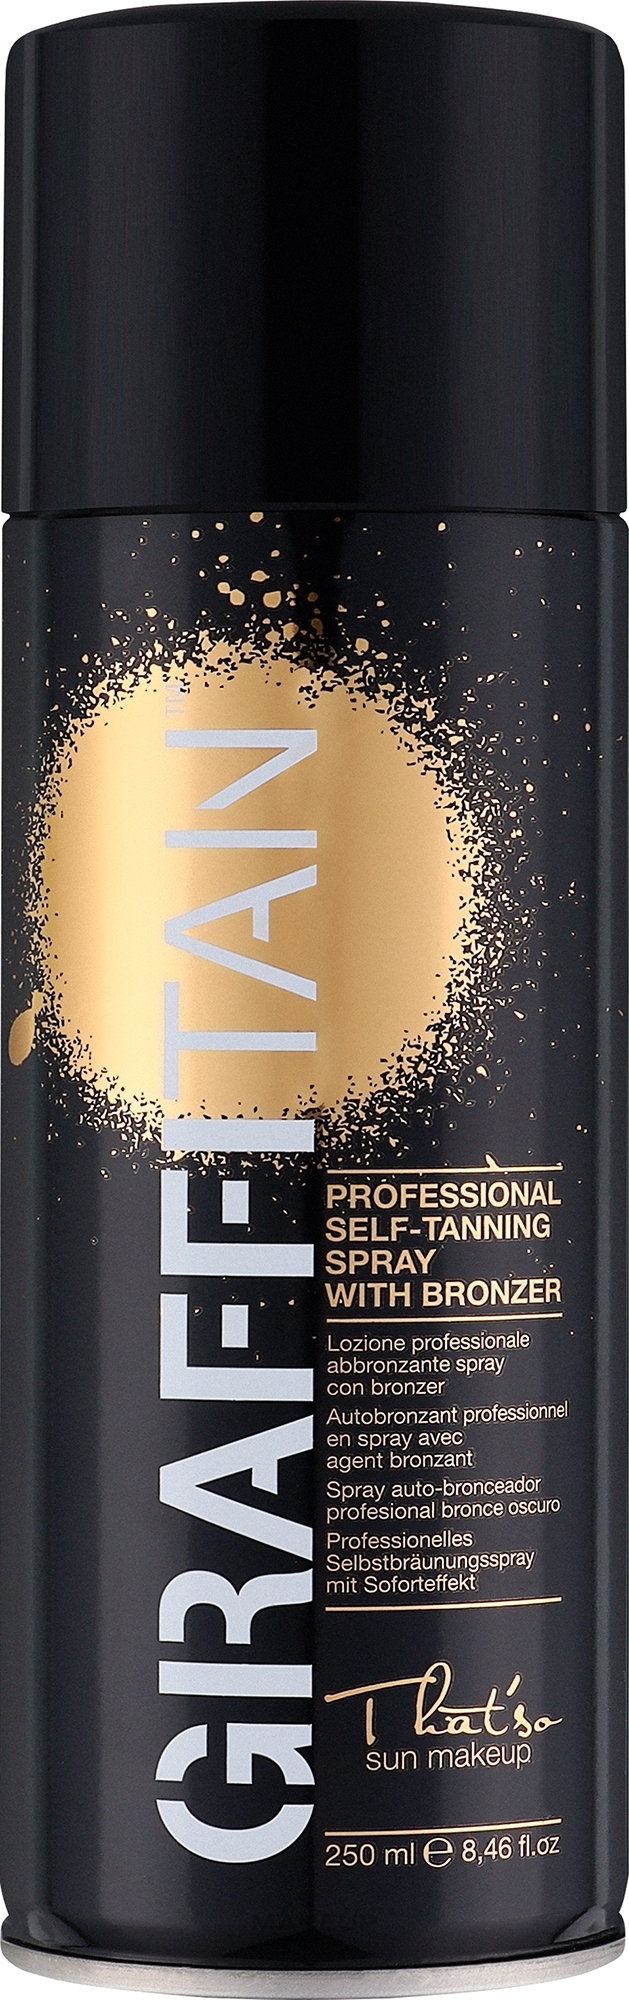 Профессиональный спрей-автозагар с бронзатором - That'So Graffitan Professional Self-Tanning Spray With Bronzer — фото 250ml